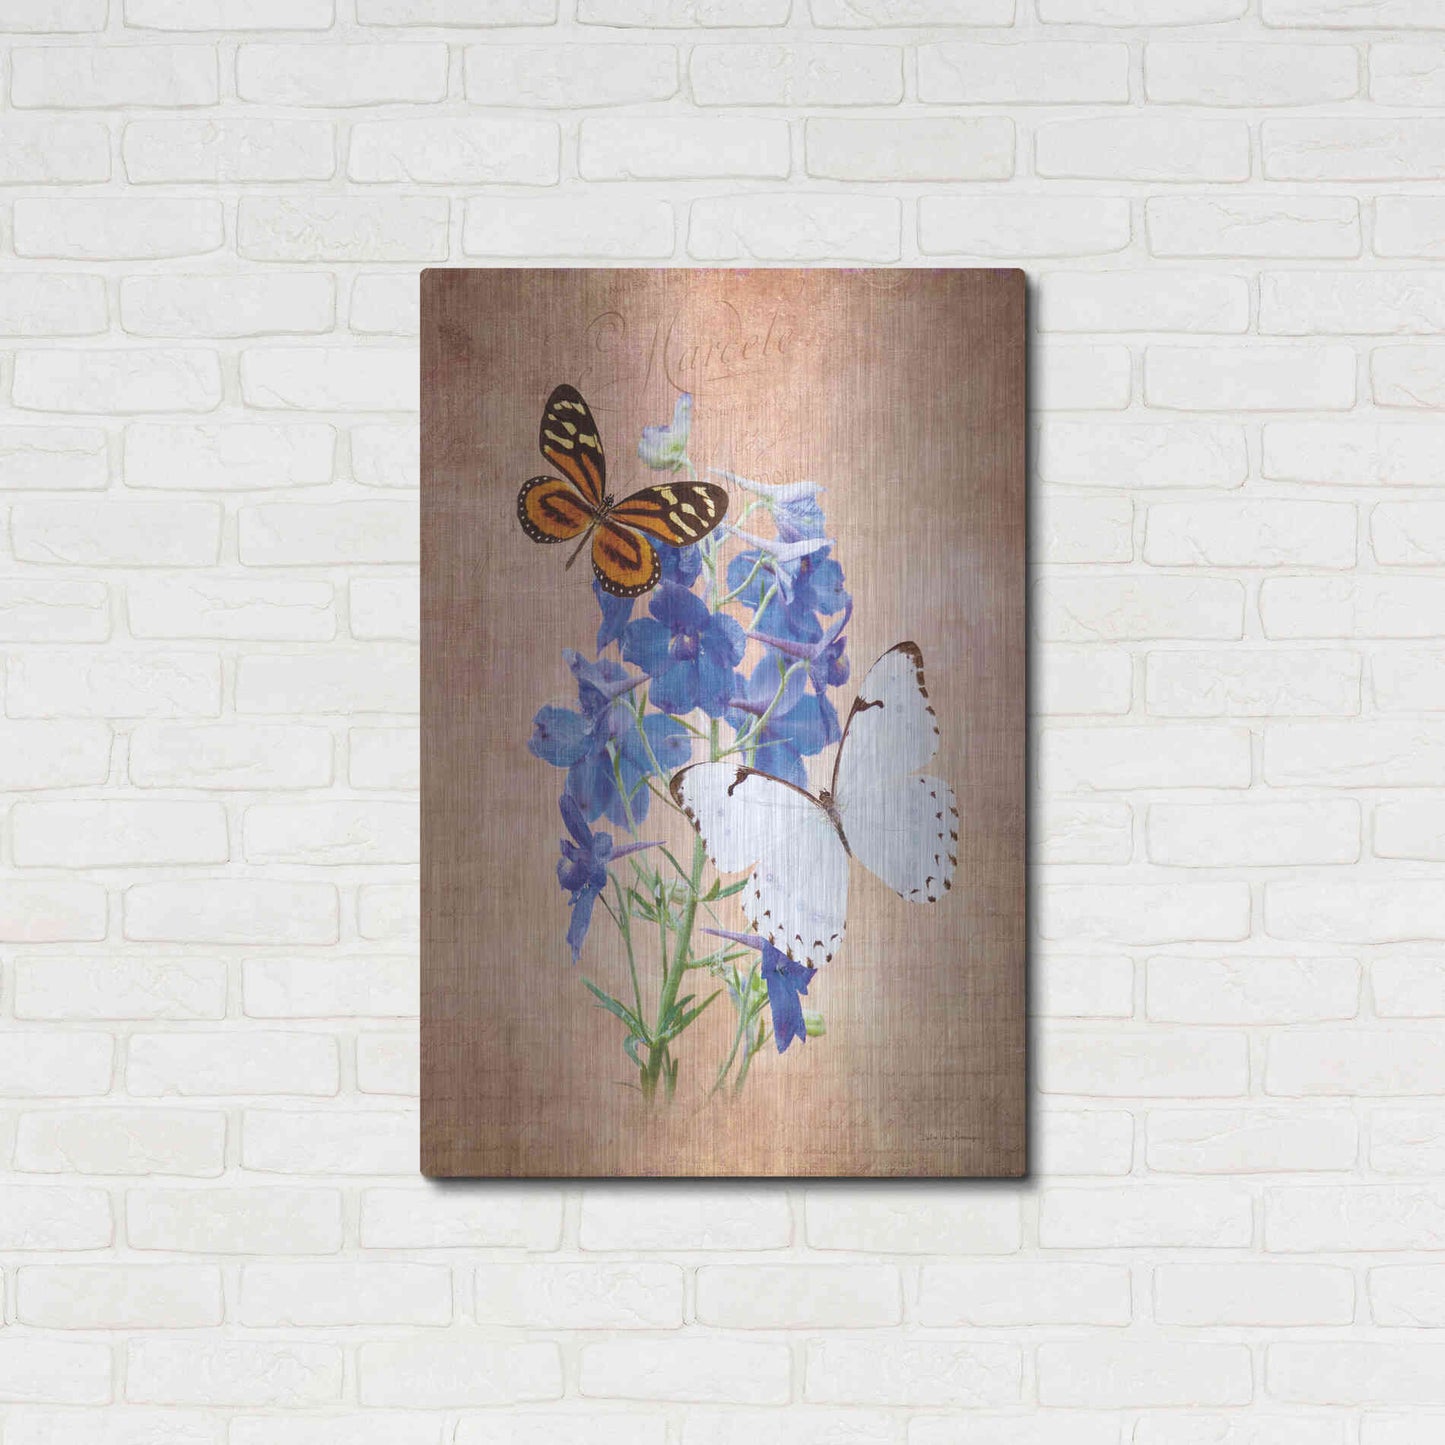 Luxe Metal Art 'Butterfly Botanical III' by Debra Van Swearingen, Metal Wall Art,24x36